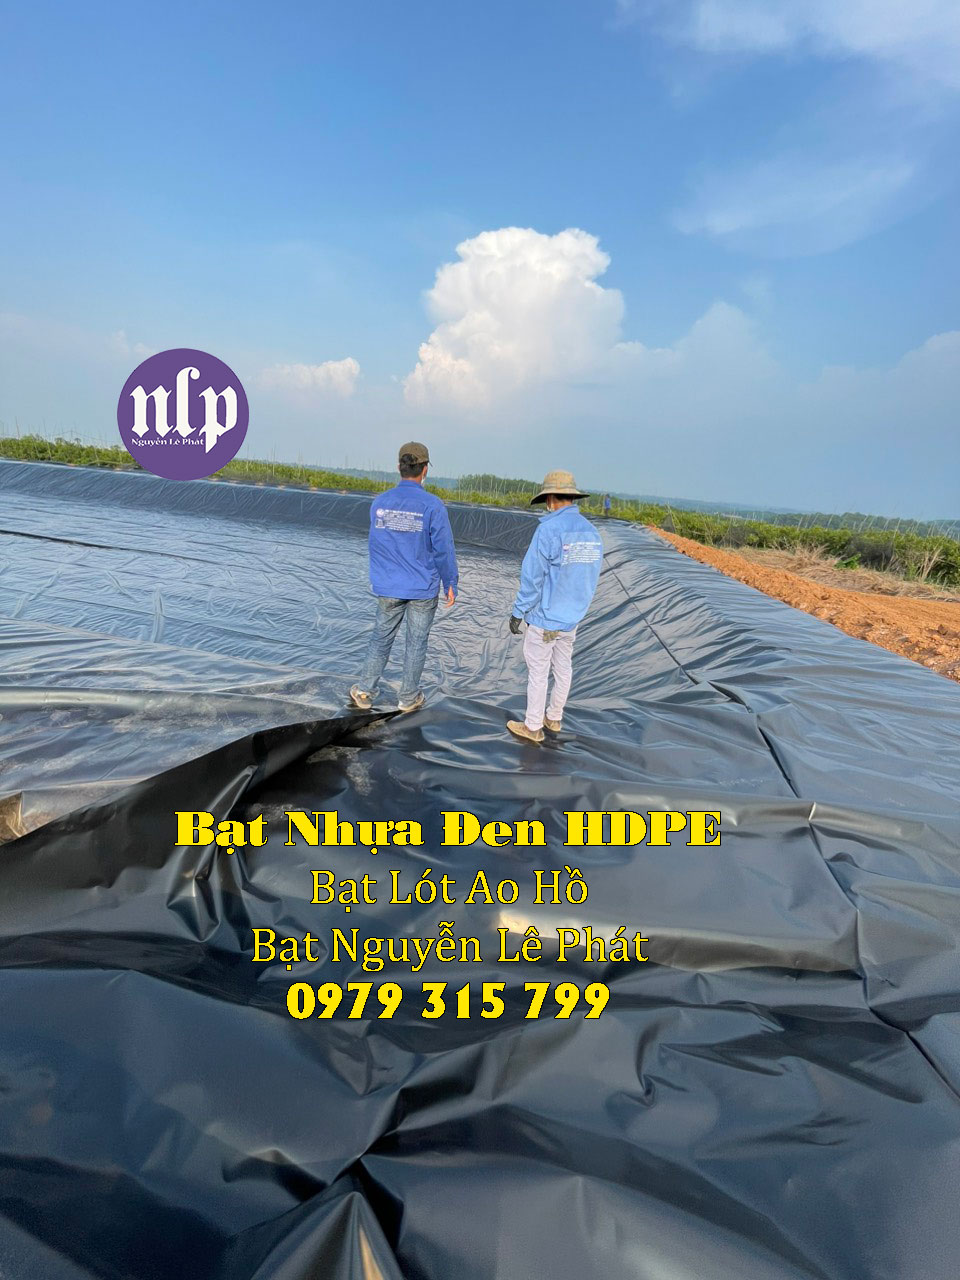 Bạt Lót Hồ Chứa Nước HDPE Giá Rẻ, Bạt Lót Hồ Chứa Nước Tại Lâm Đồng Bảo Lộc, Màng Bạt HDPE Chống Thấm